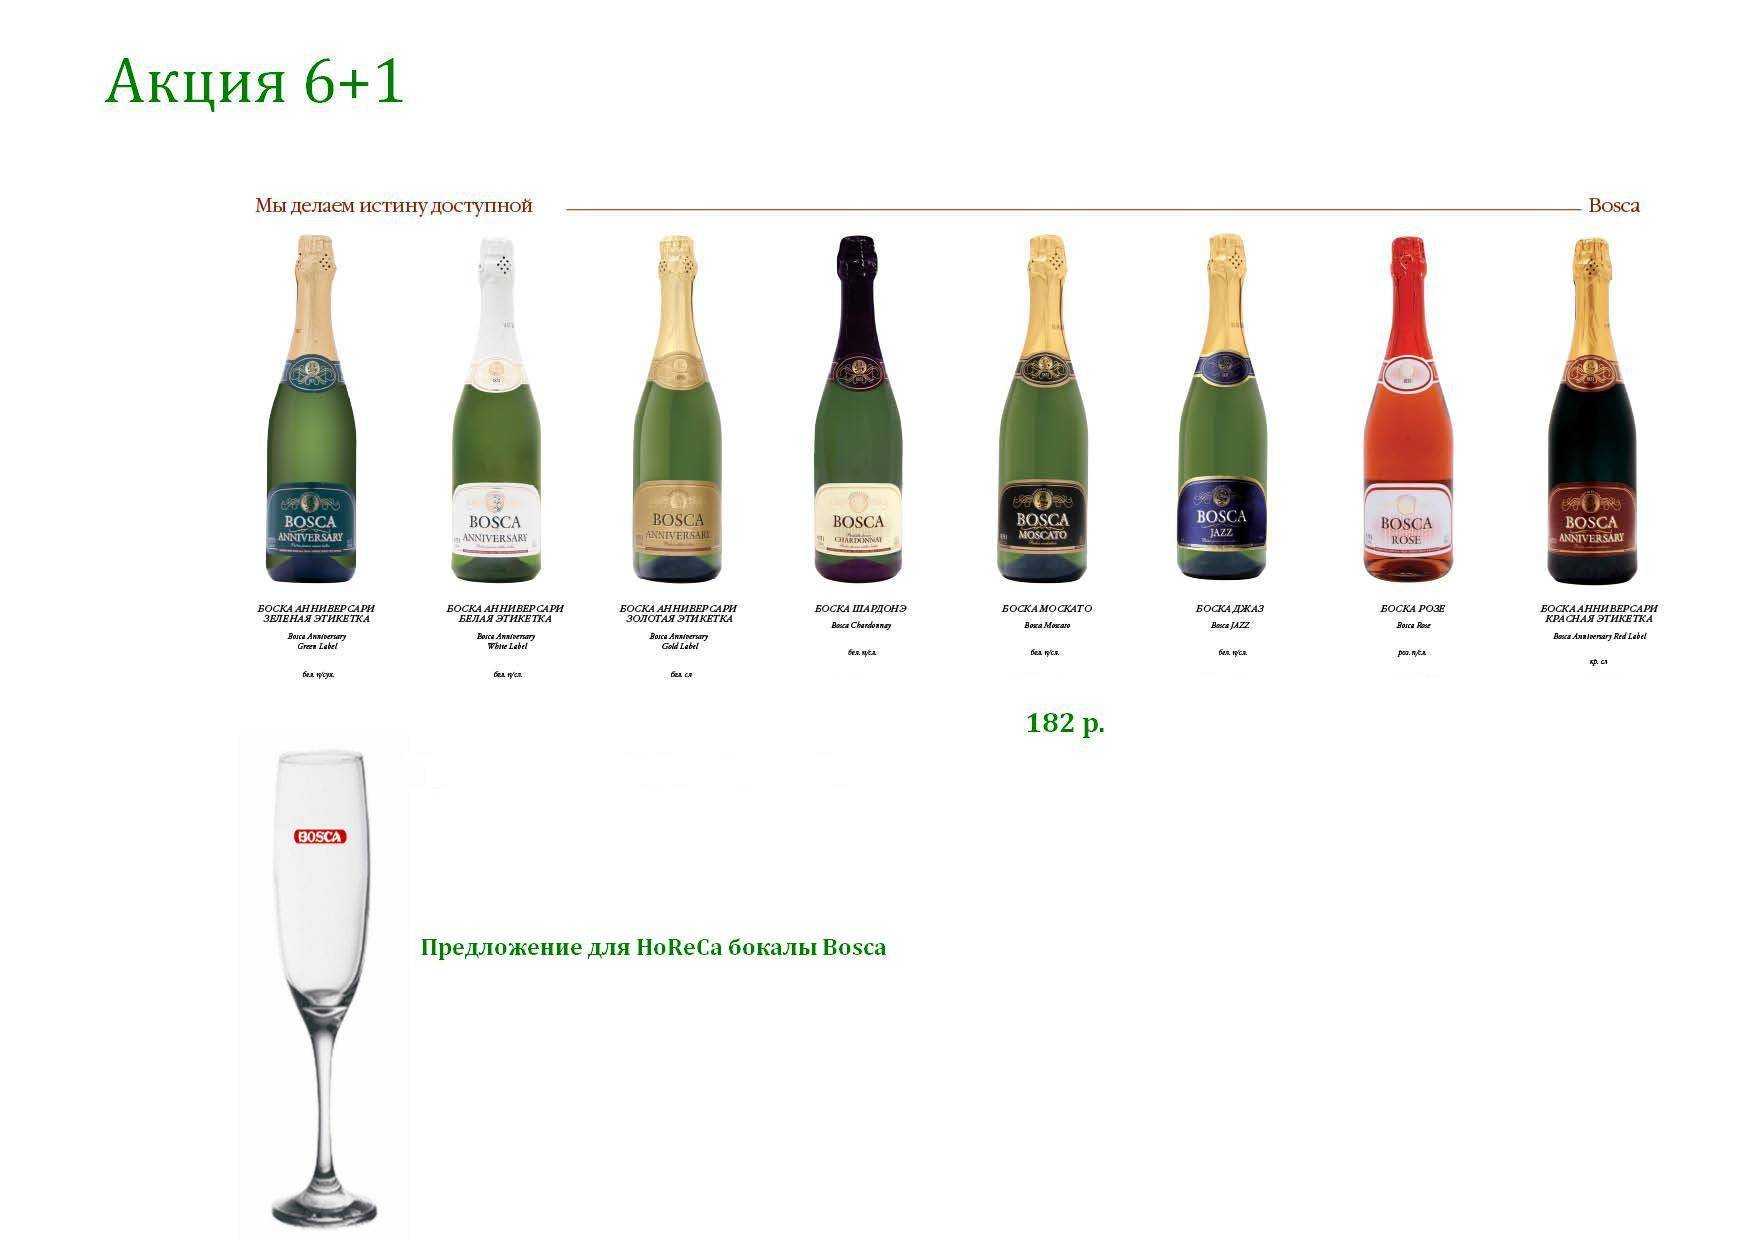 Дербентское шампанское: история завода, характеристики, виды